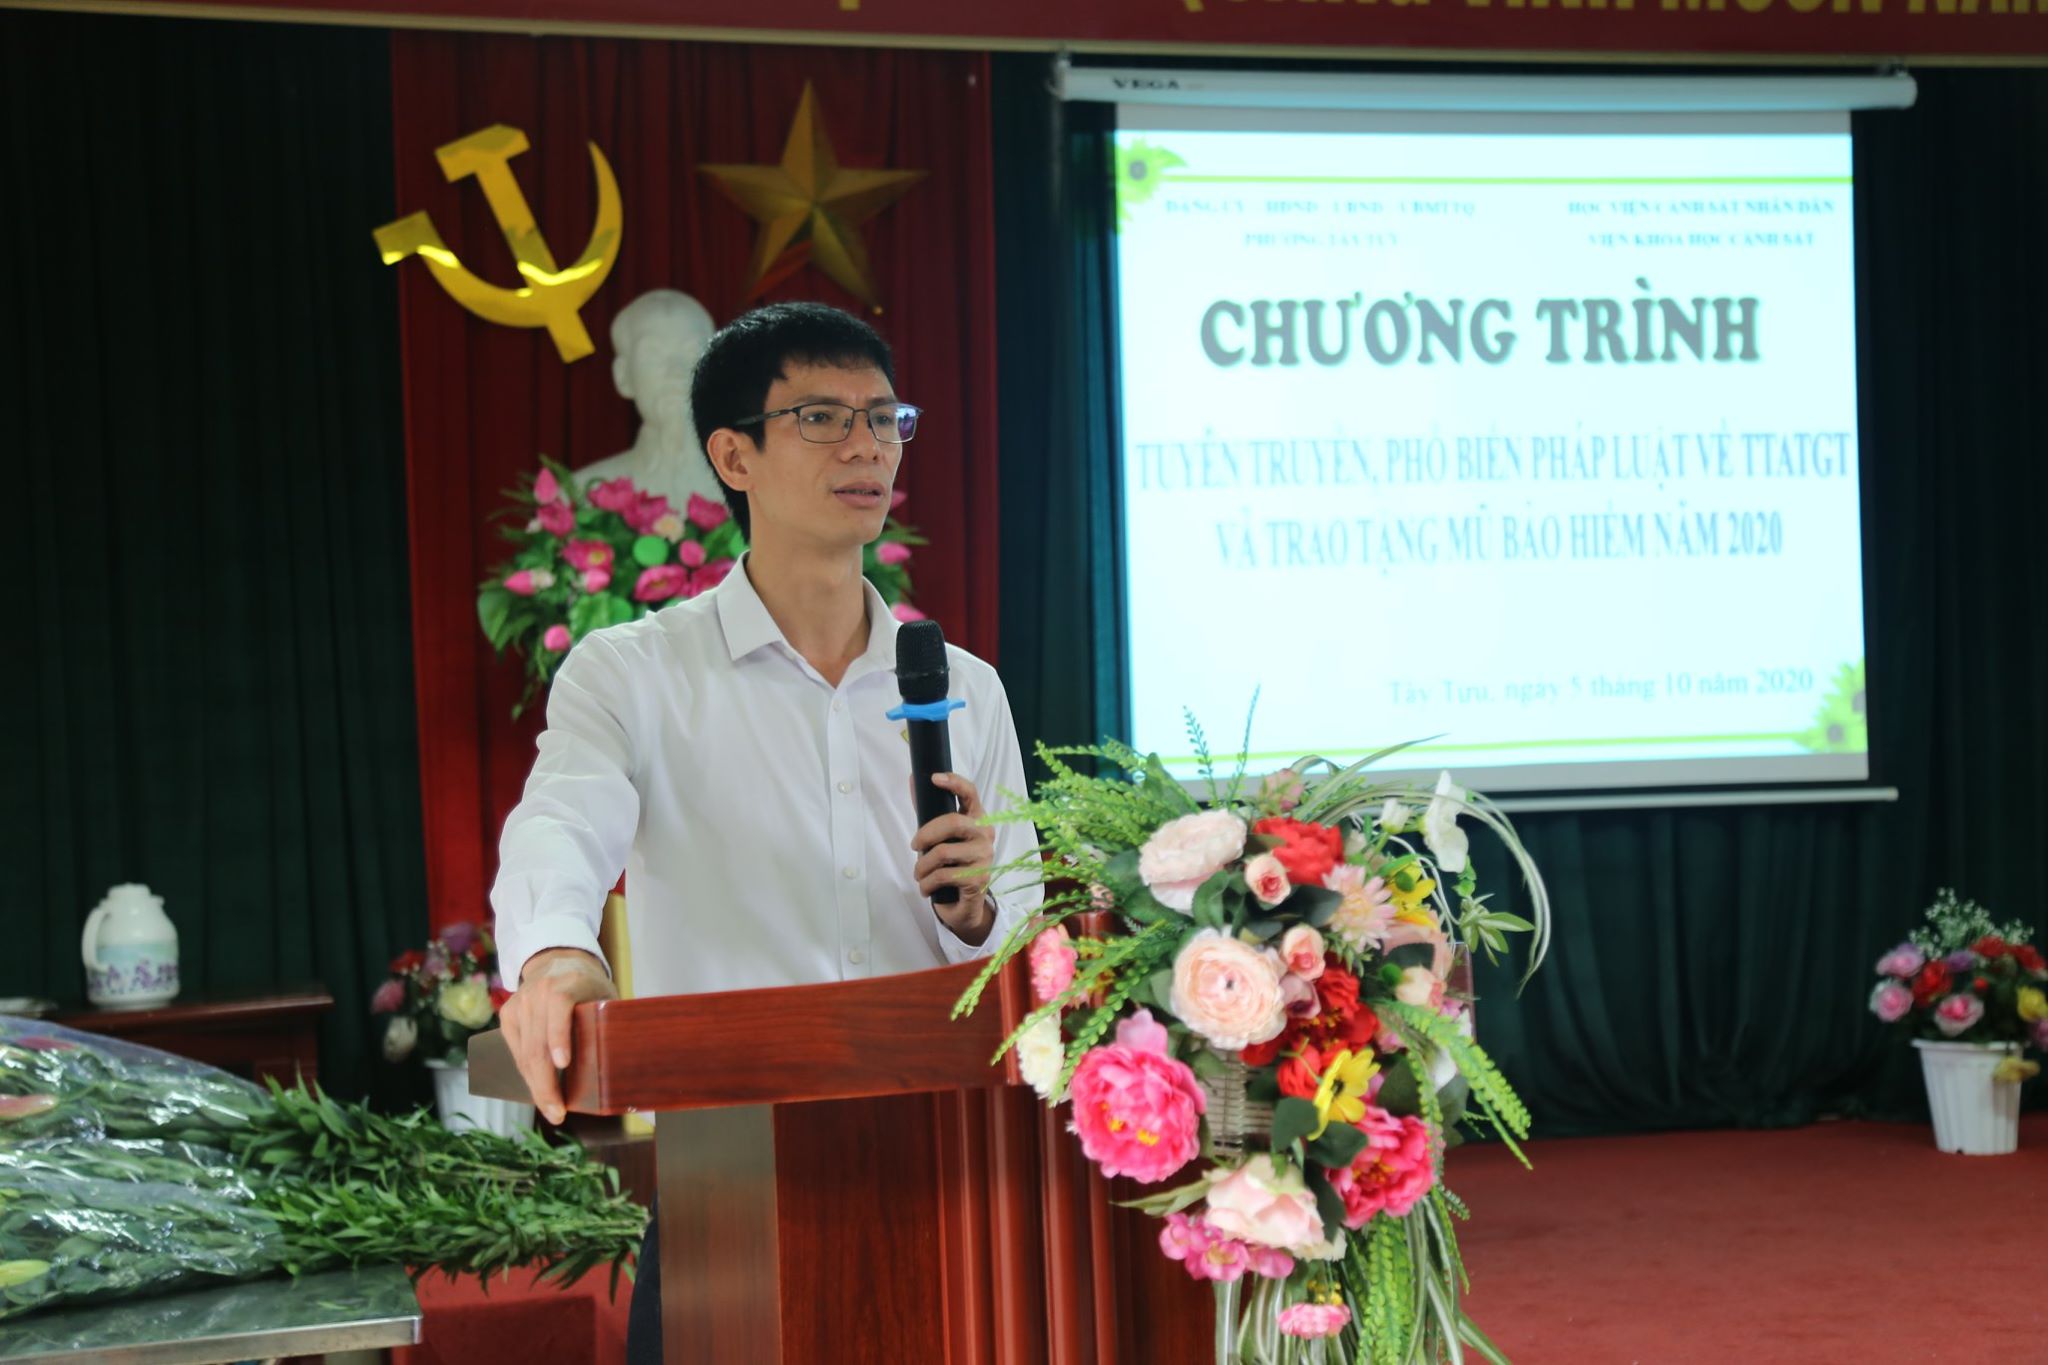 Đồng chí Nguyễn Viết Mạnh - Phó Bí thư thường trực, Chủ tịch HĐND phát biểu tại chương trình